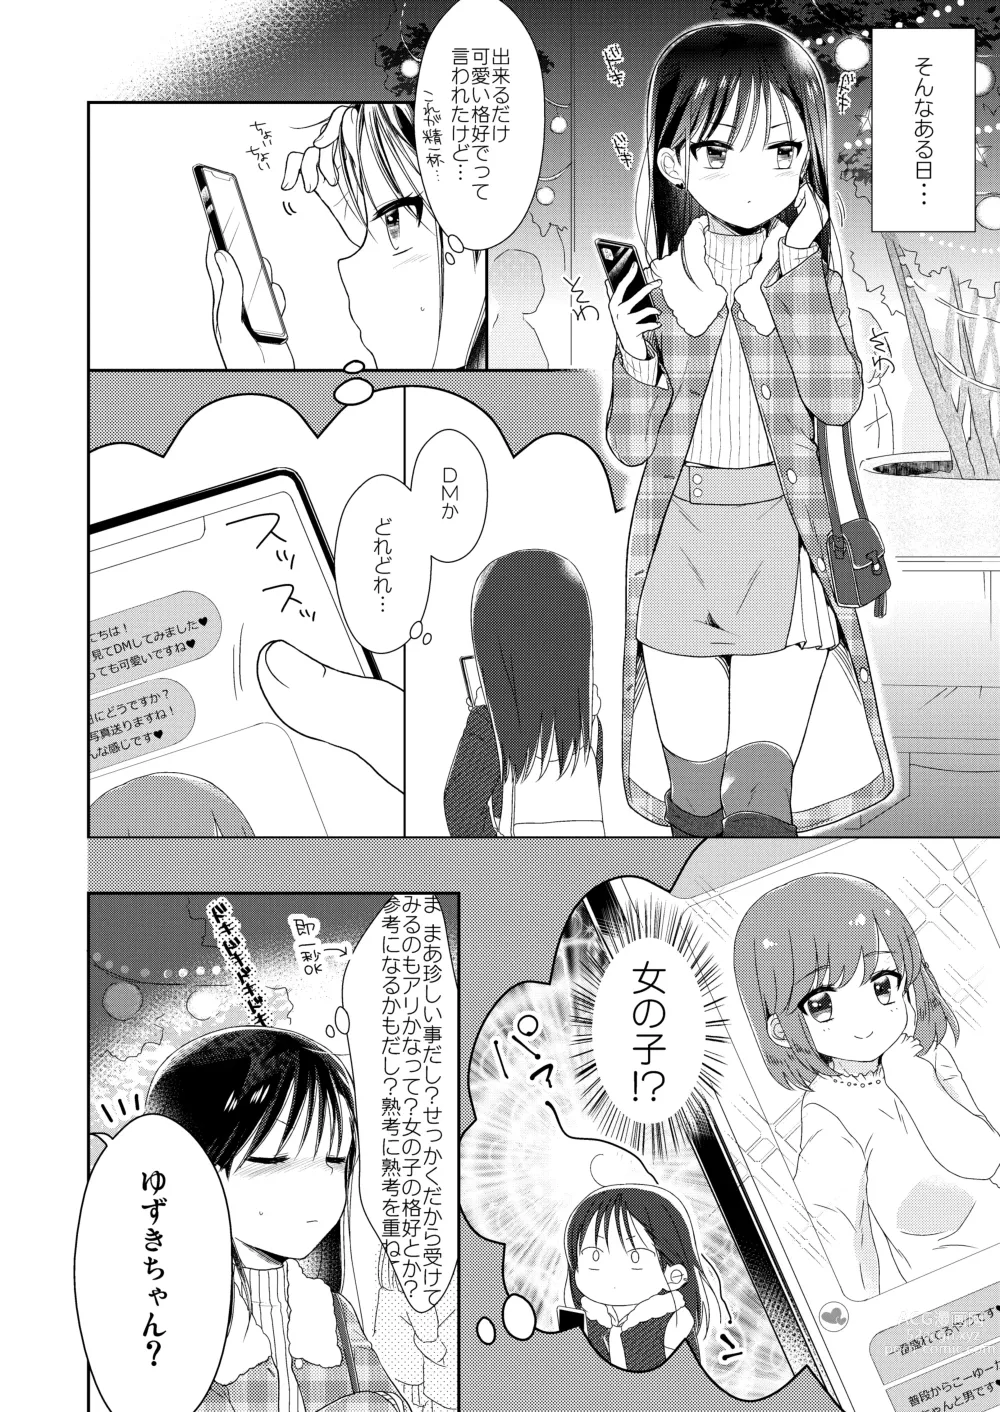 Page 7 of doujinshi Otokonoko x Otokonoko = Saikou